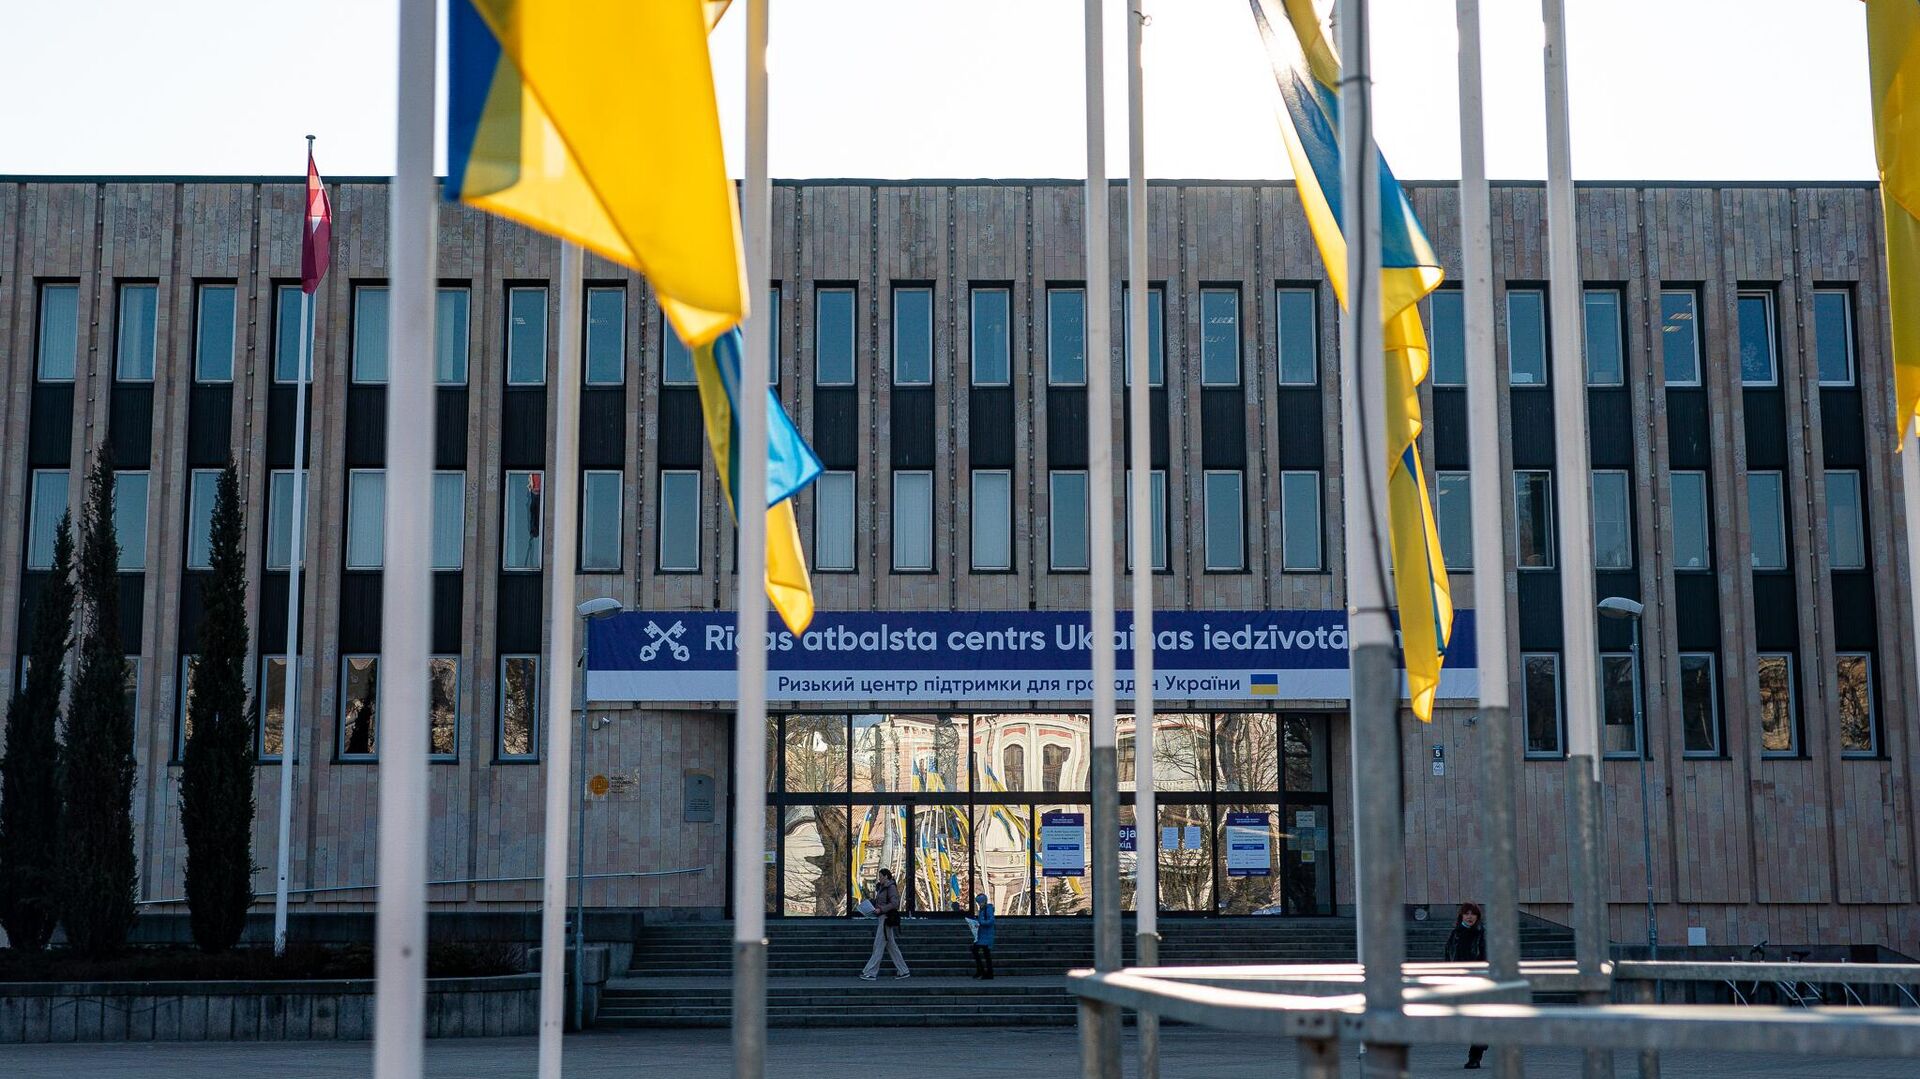 Рижский центр поддержки граждан Украины в здании Дома конгрессов в Риге - Sputnik Латвия, 1920, 06.04.2022